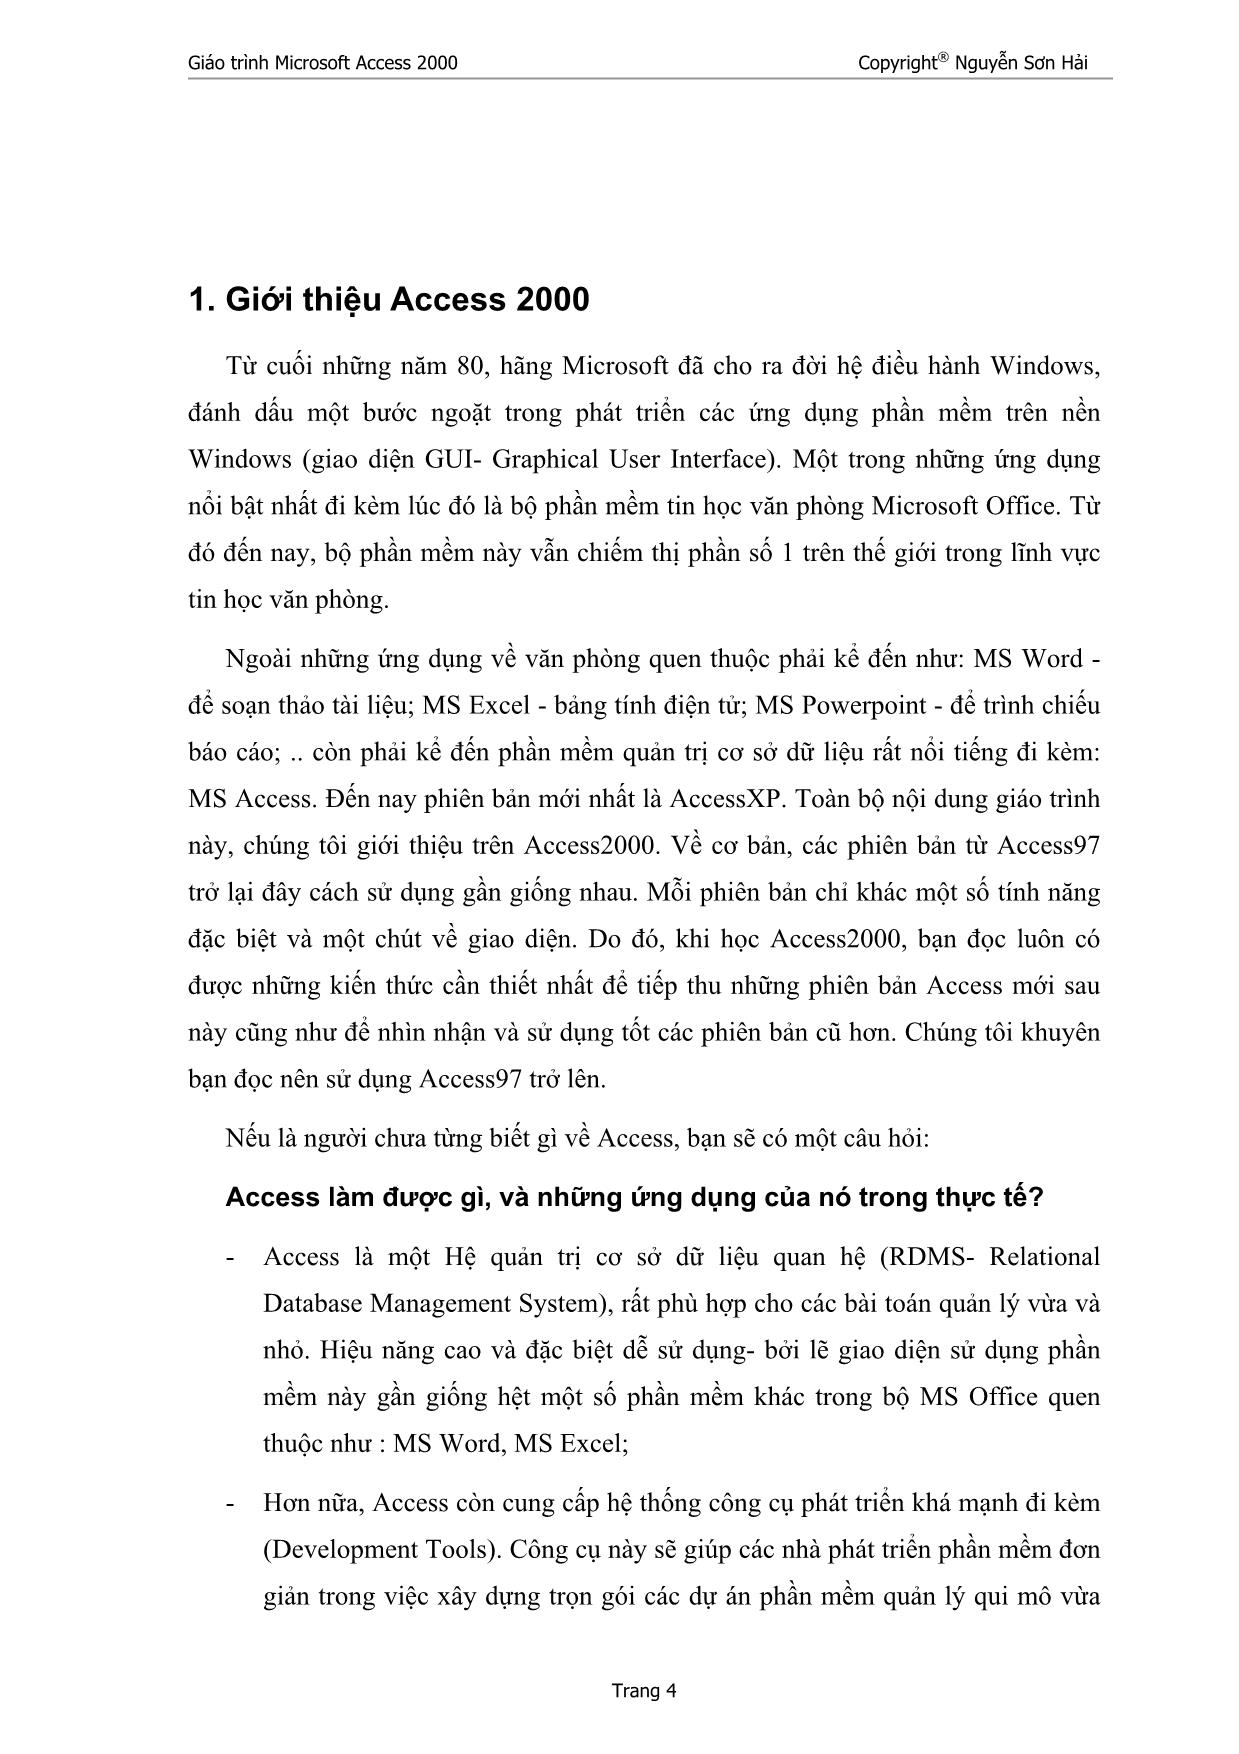 Giáo trình Microsoft Access 2000 (Phần 1) trang 4